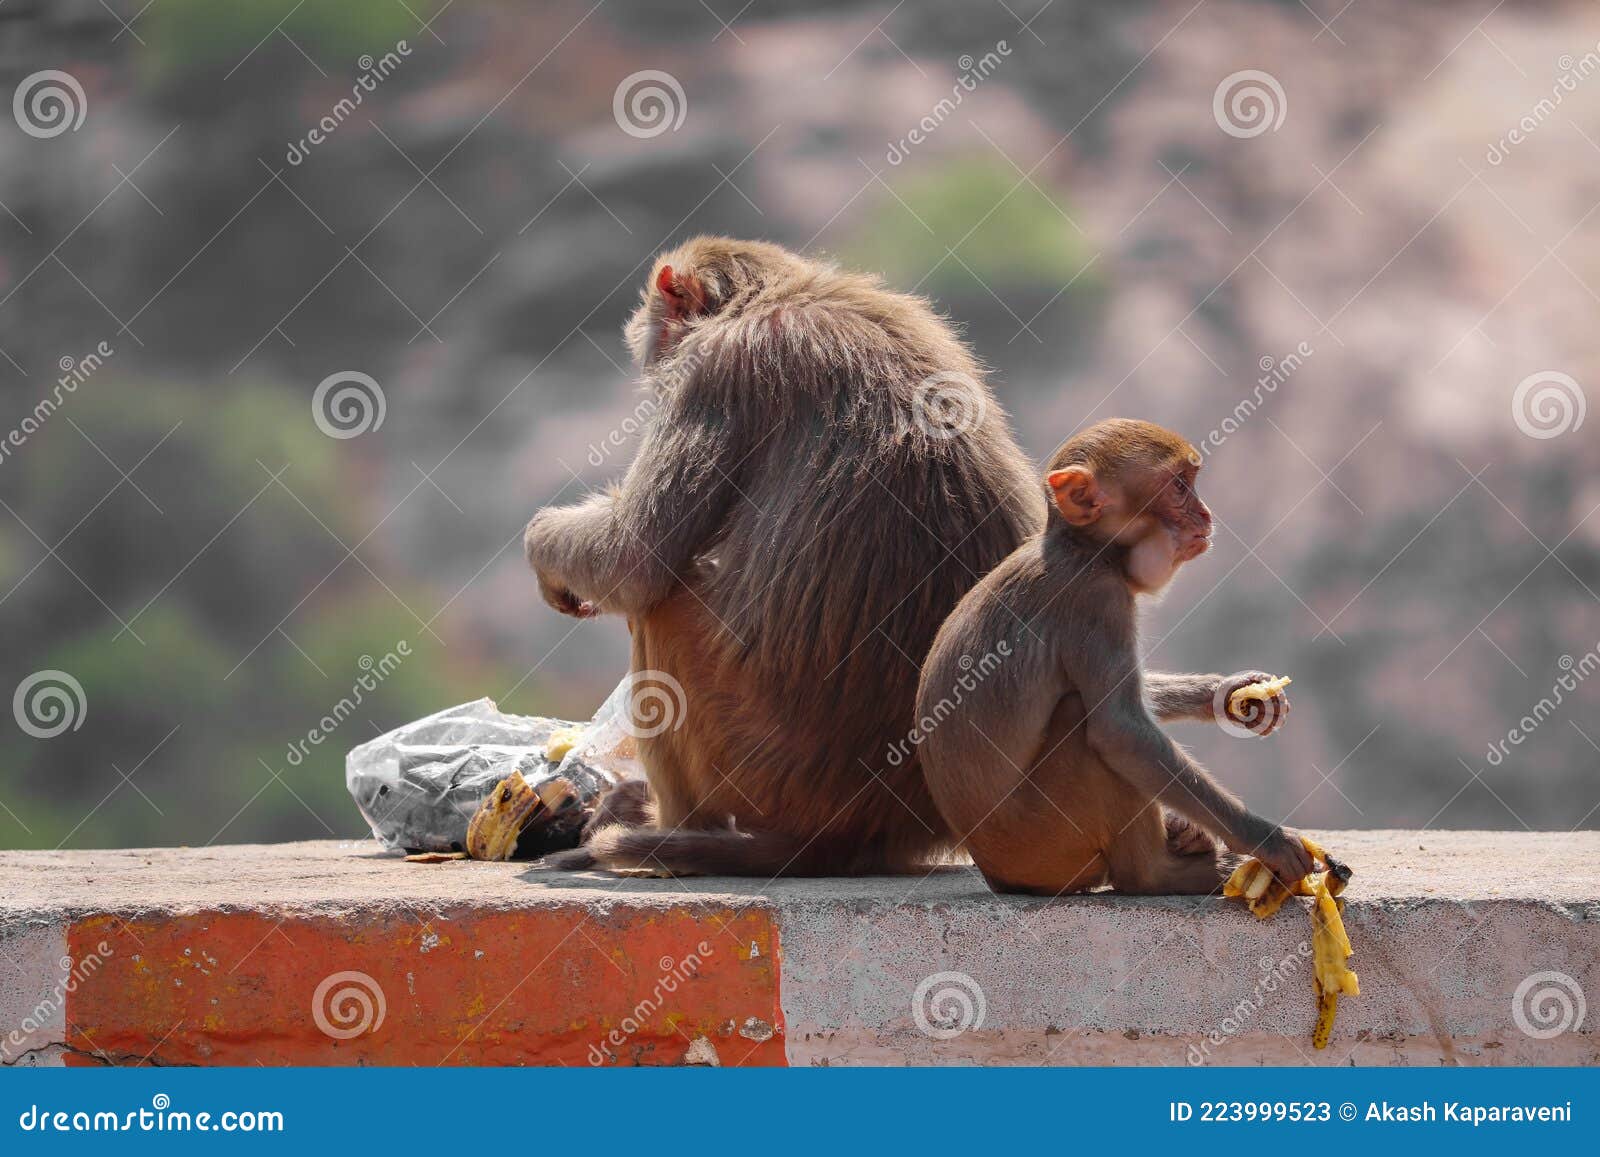 灵性母猴抱小猴到诊所求医 打完针自行安静出院 | 不吵不闹 | 新唐人中文电视台在线